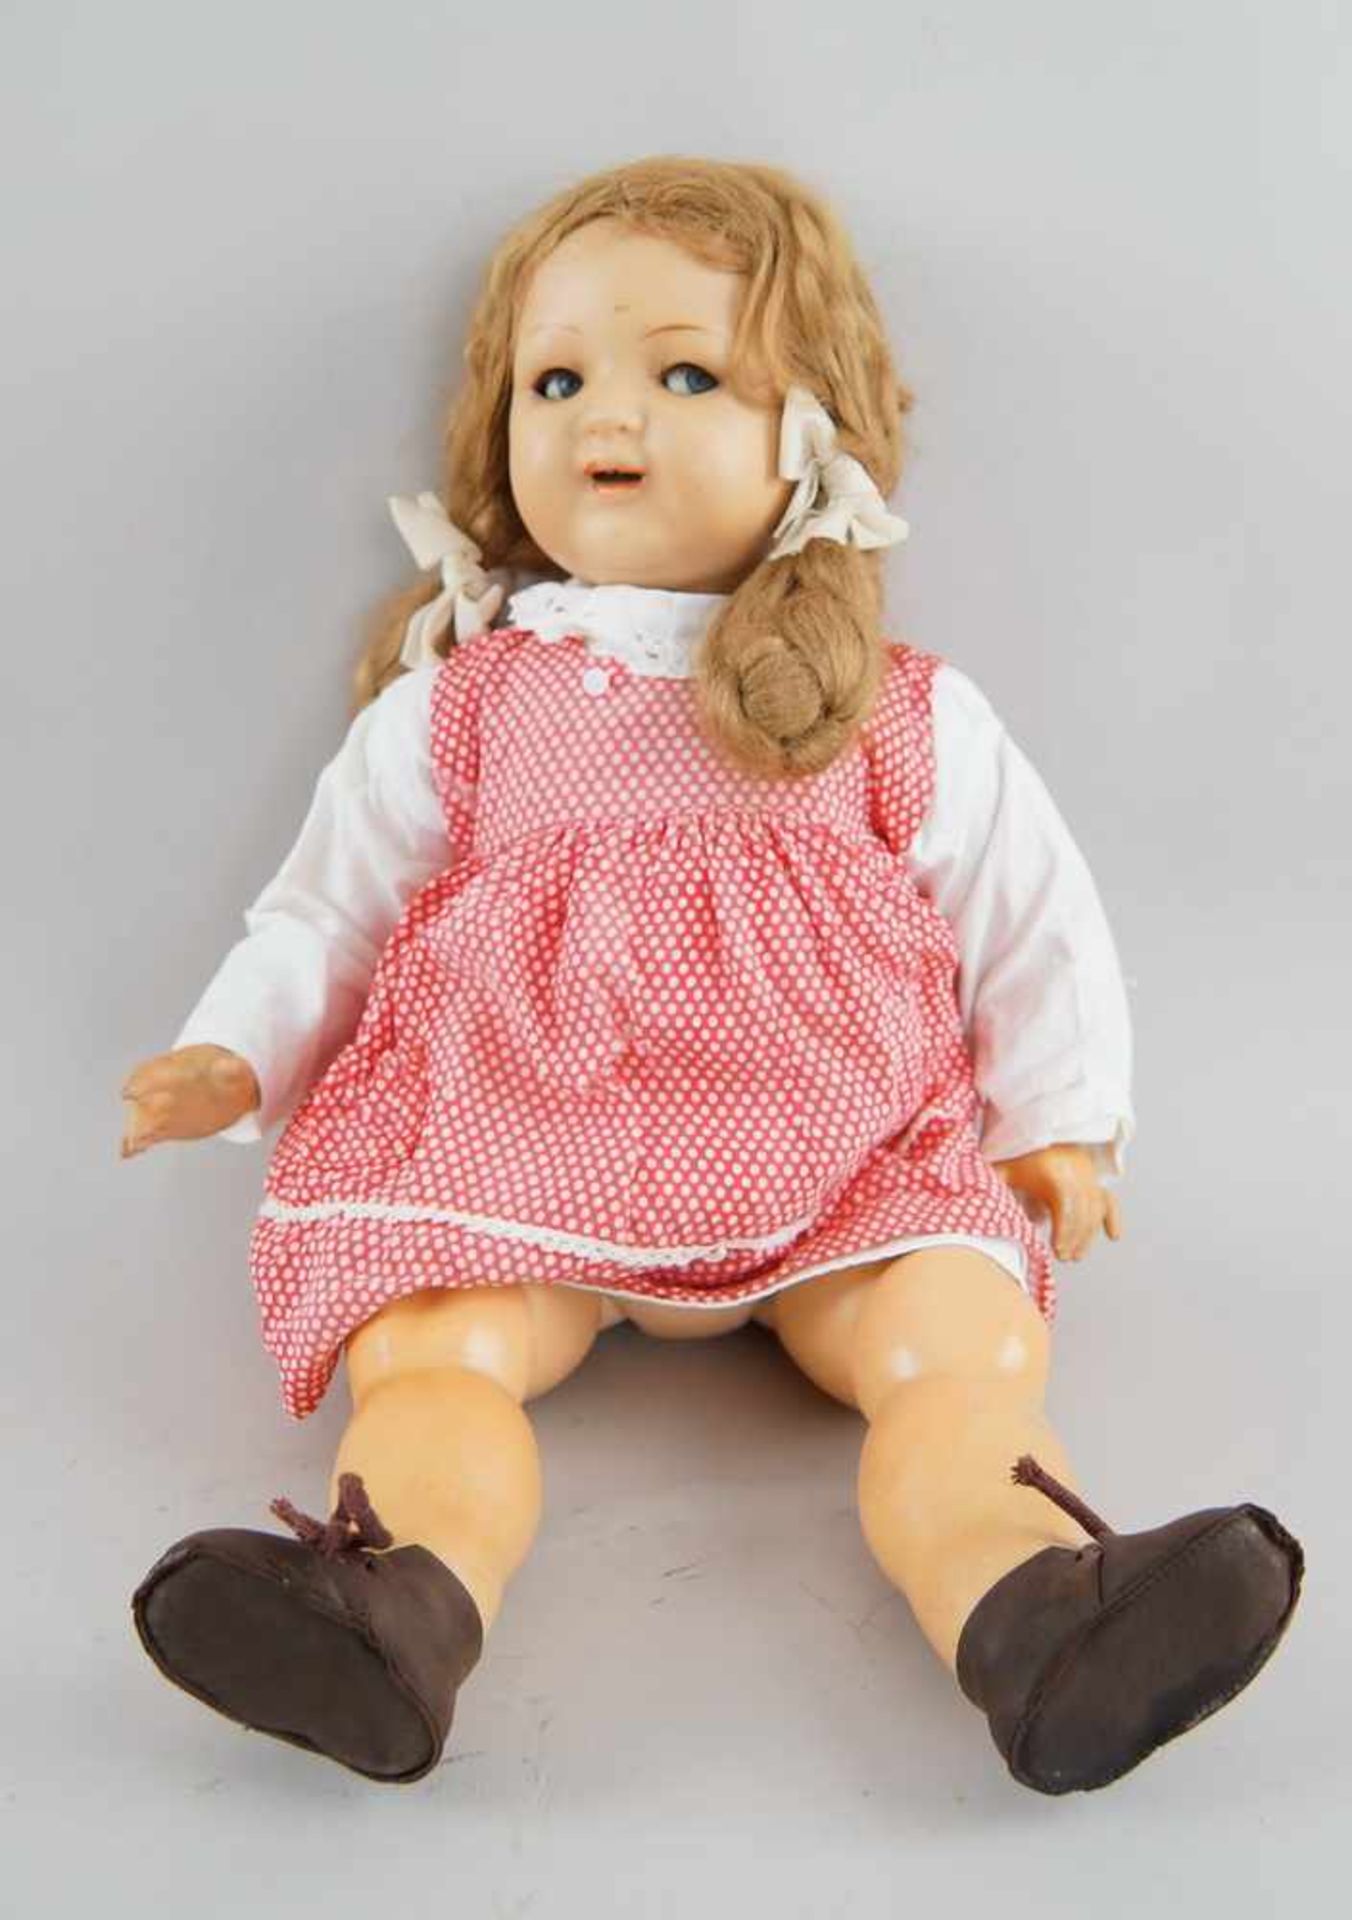 Puppe, wohl K&R, Massekopf, rot gepunktetes Kleid, um 1930, bespielt, 54 cm- - -24.00 % buyer's - Bild 2 aus 5